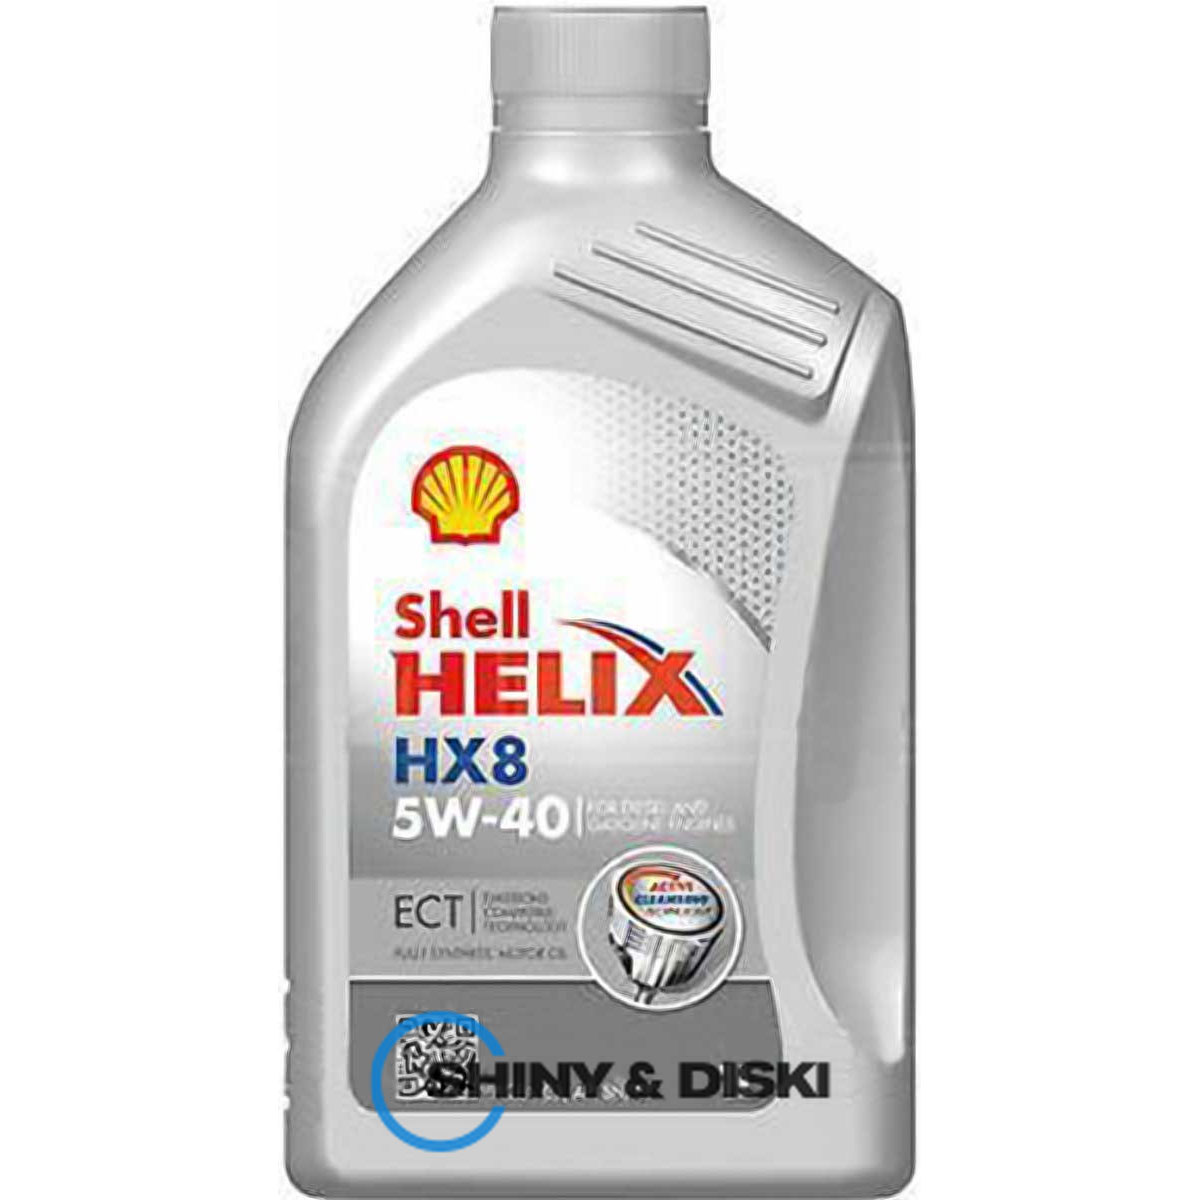 shell helix hx8 ect 5w-40 (1л)